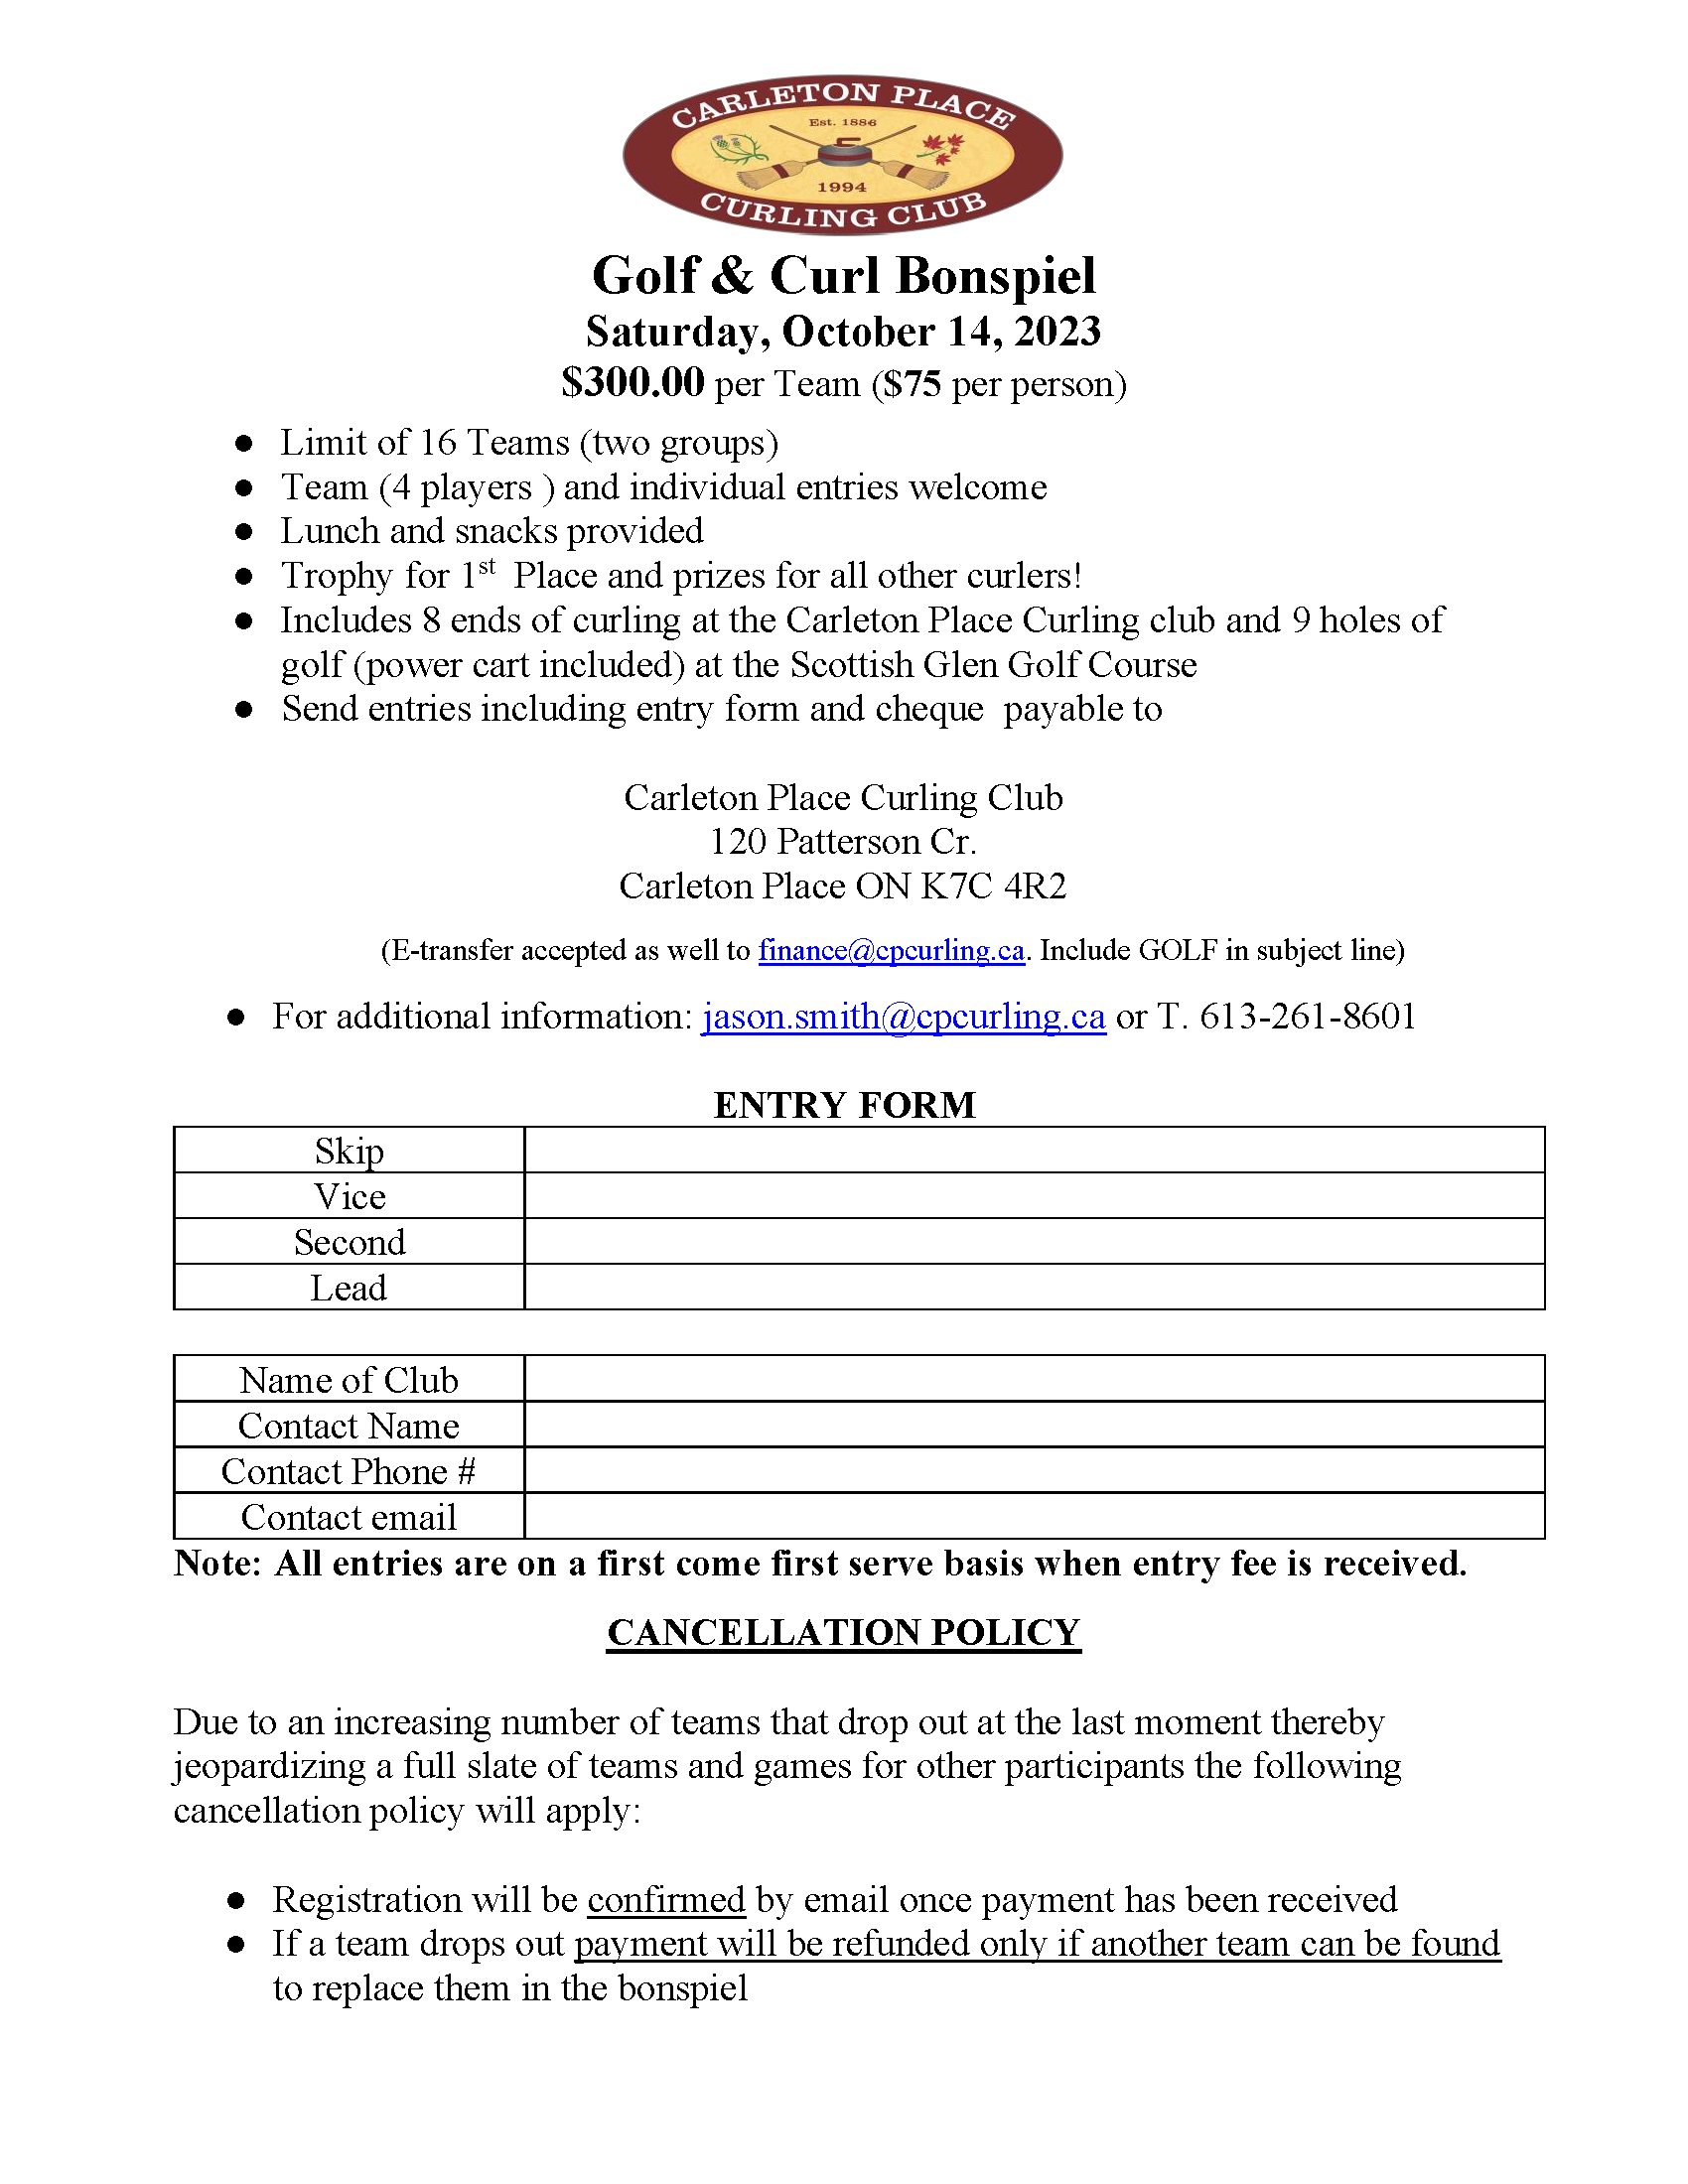 Golf Curl Bonspiel 2023 Registration Form